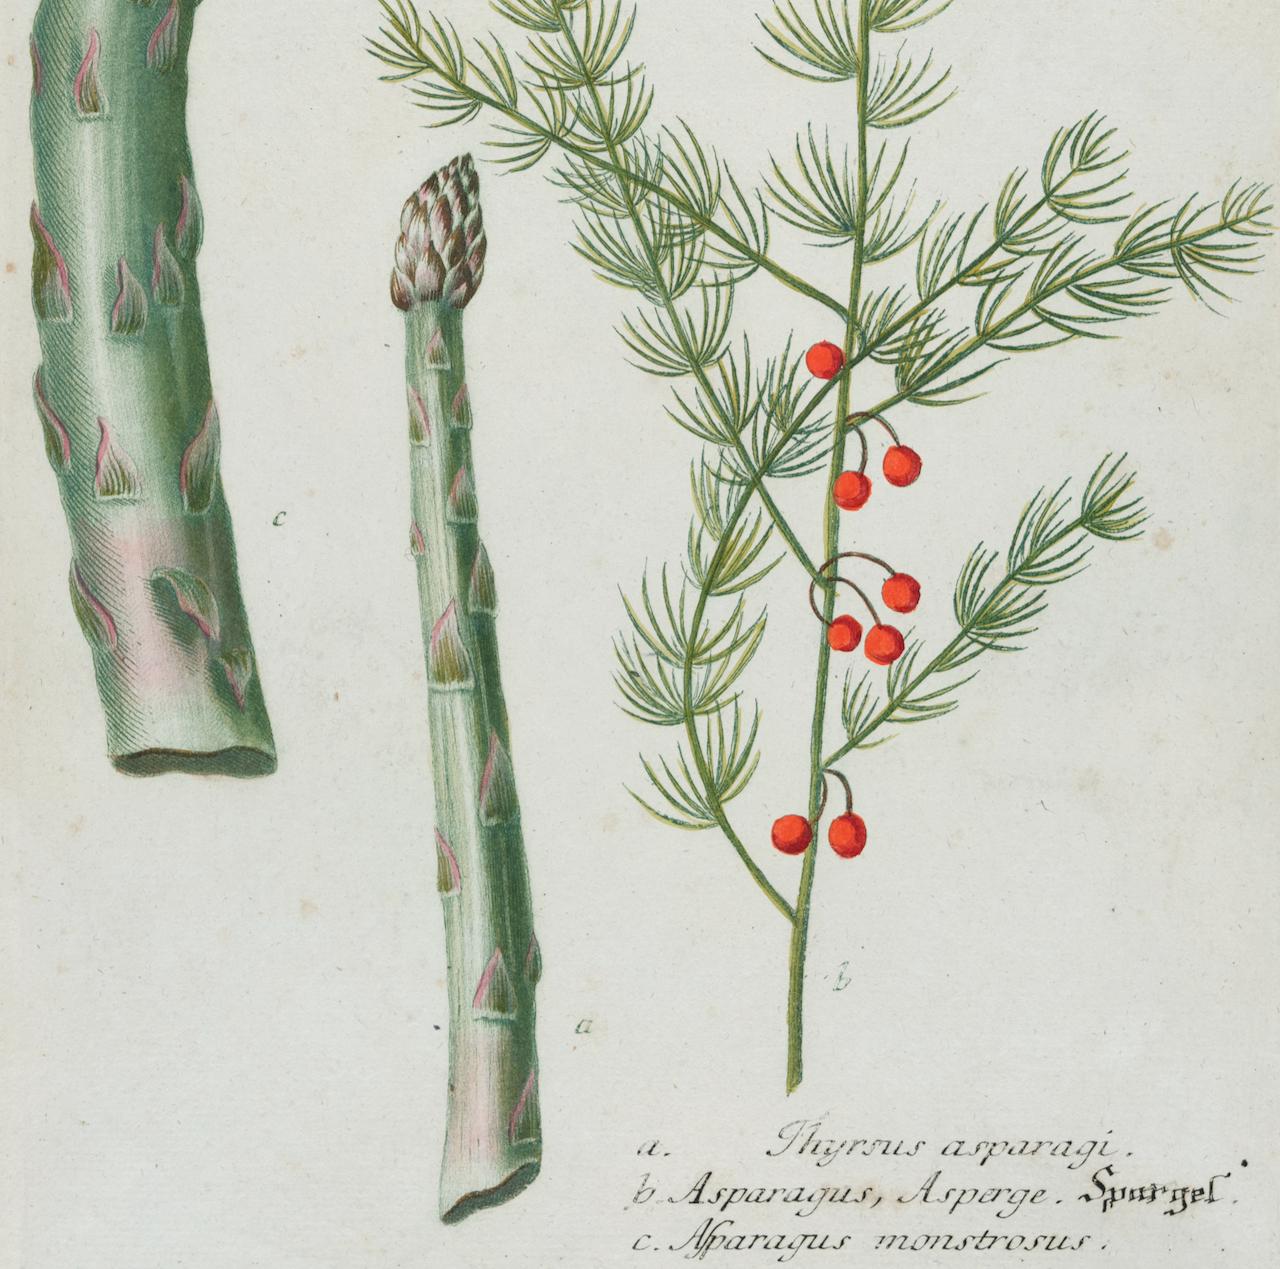 Cette gravure botanique colorée en mezzotinte et au trait, terminée par un coloriage à la main, de Johann Wilhelm Weinmann (1683-1741) s'intitule a. Thyrsus asparagi. b. Asparagus, Asperge. c. Asparagus monstrosus (Asparagus)